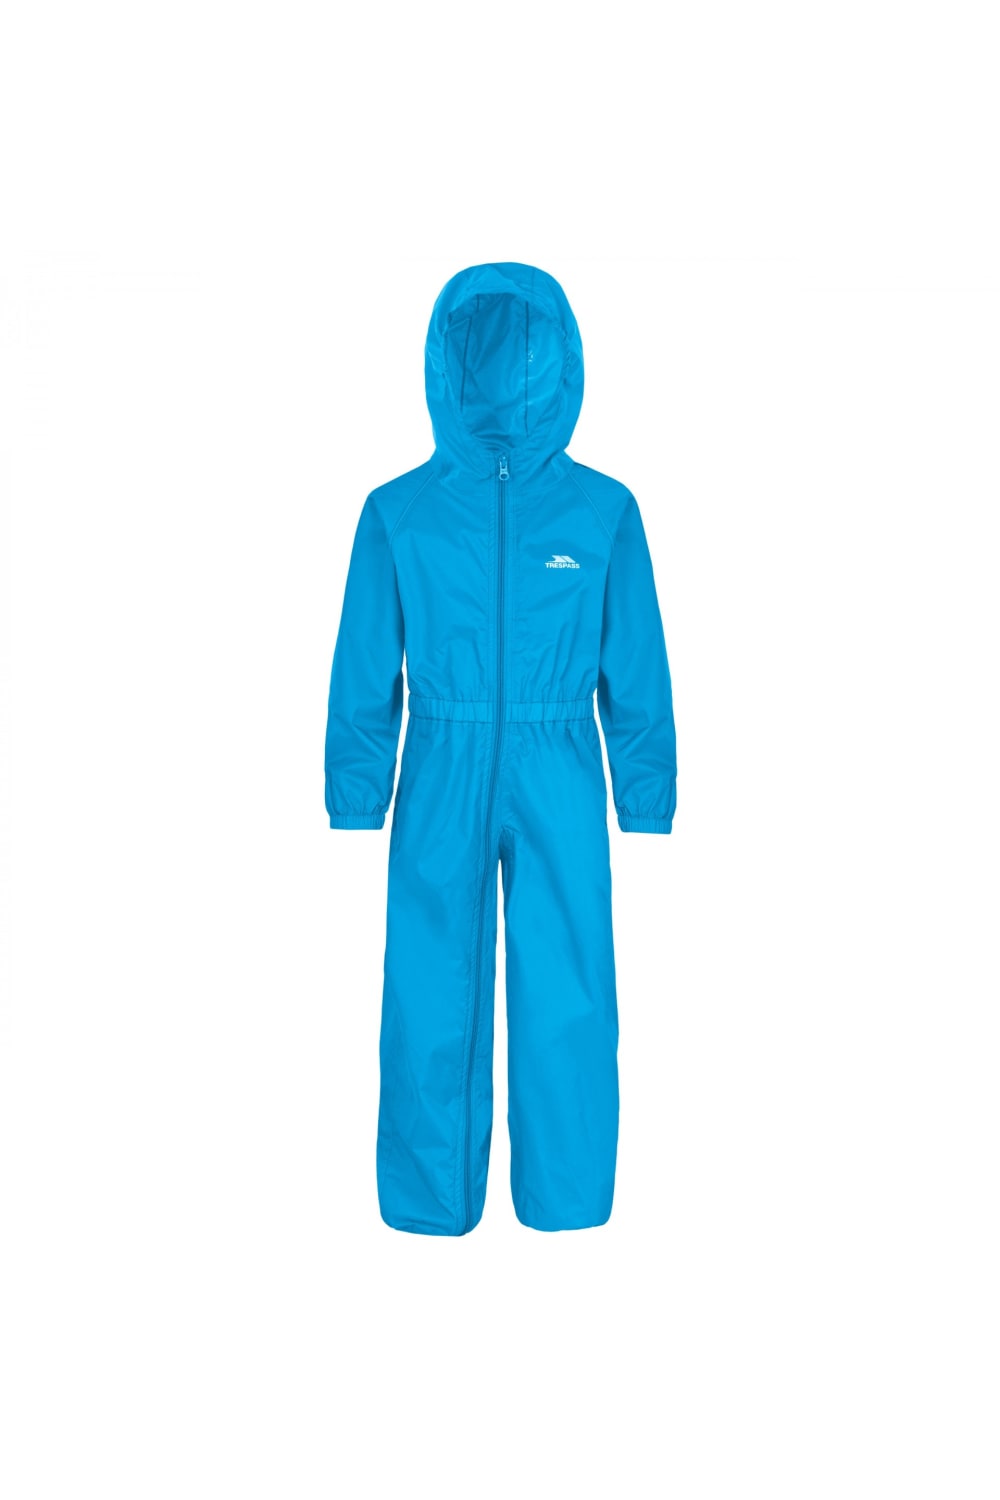 Trespass Childrens/Kids Button Rain Suit (Blue)